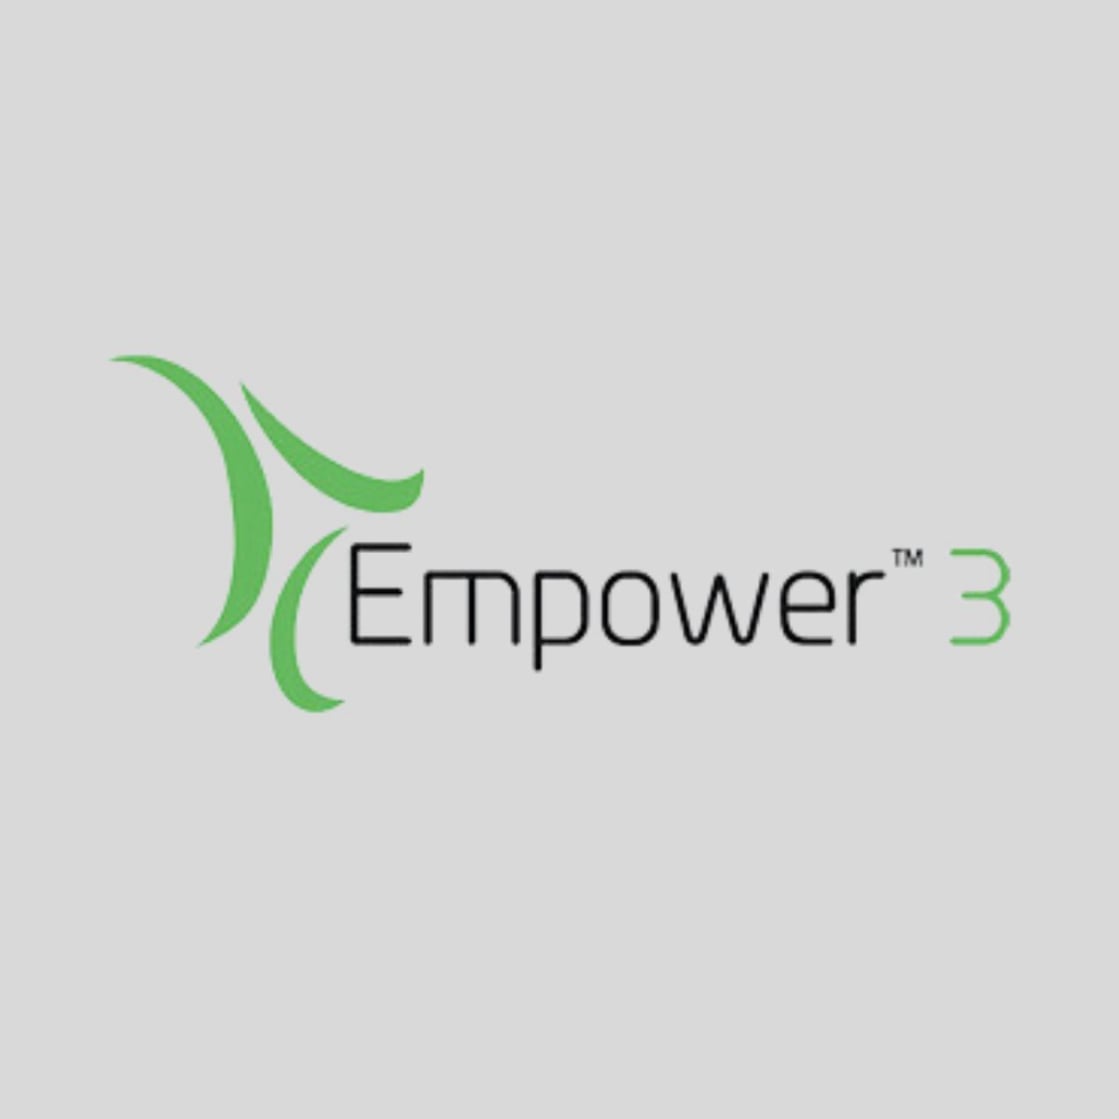 Empower 3